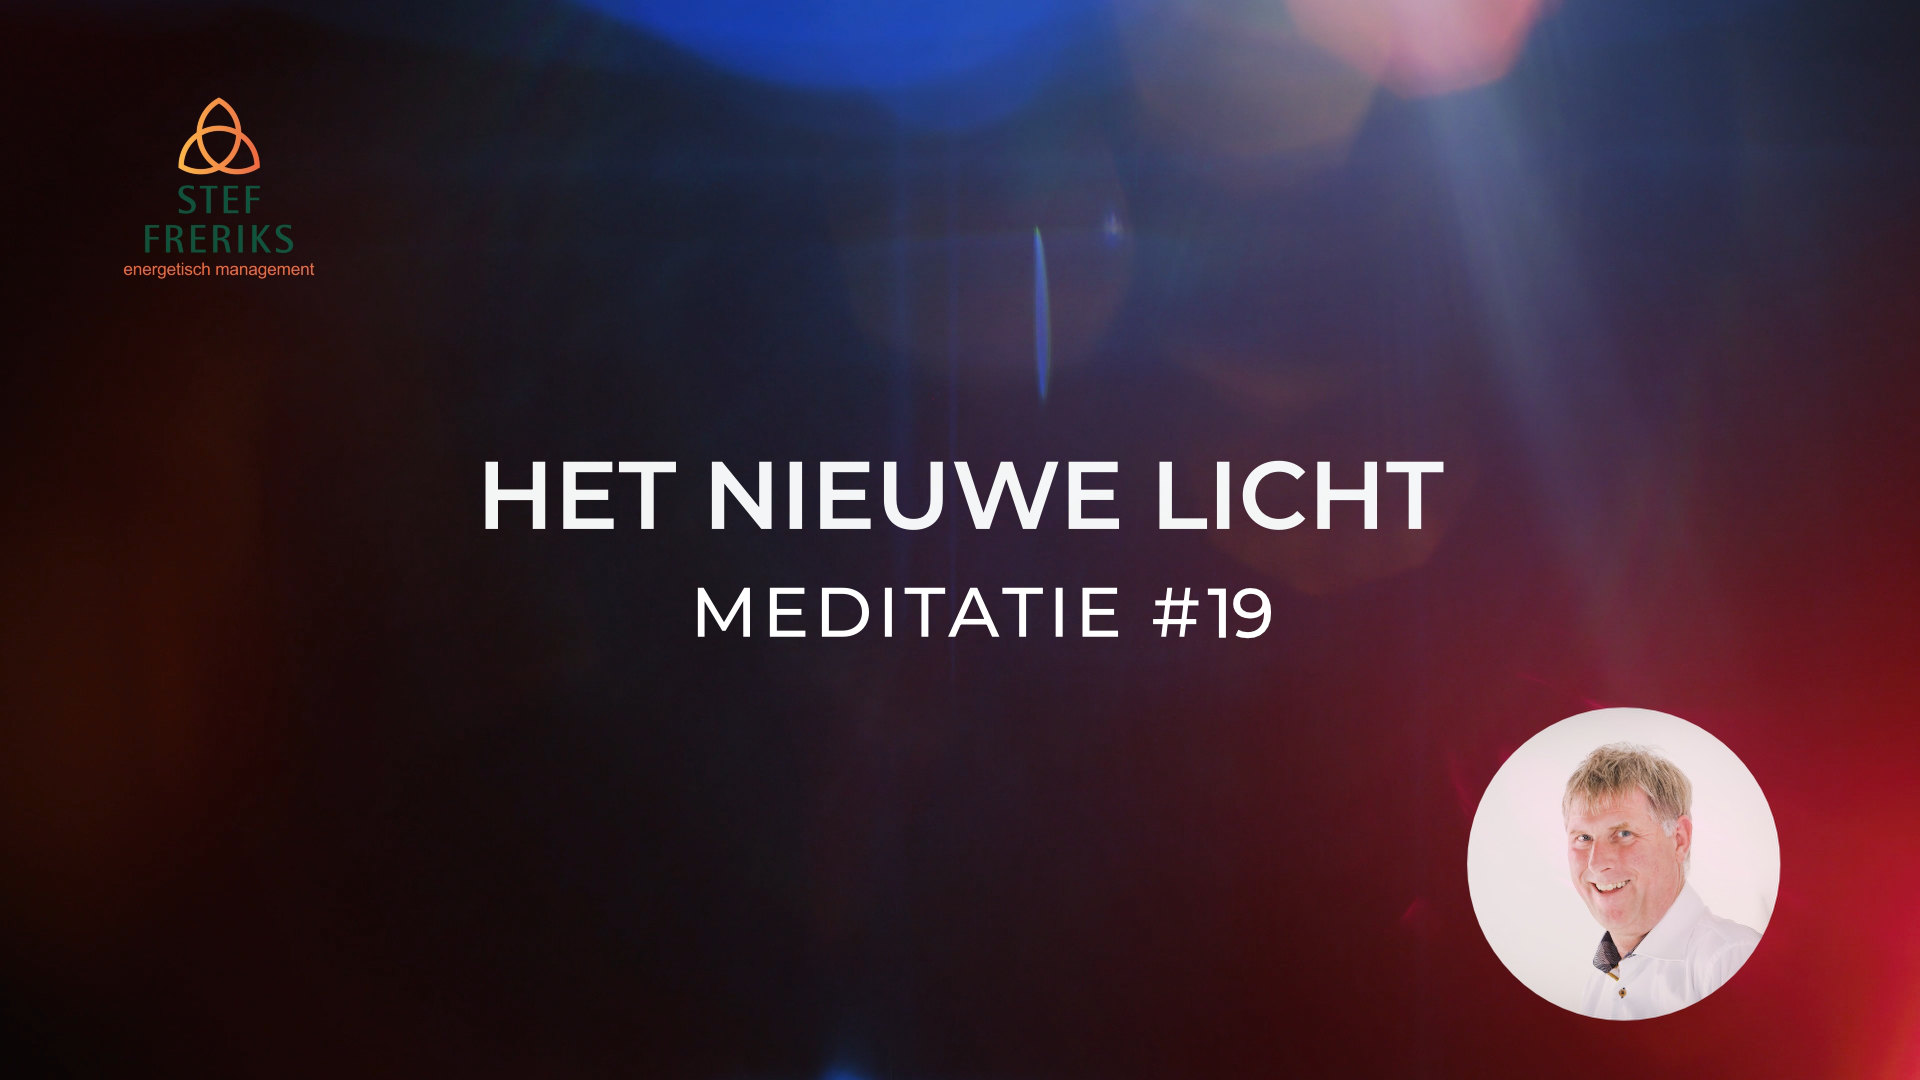 Meditatie #19 uit de serie Het Nieuwe Licht: Verbinding